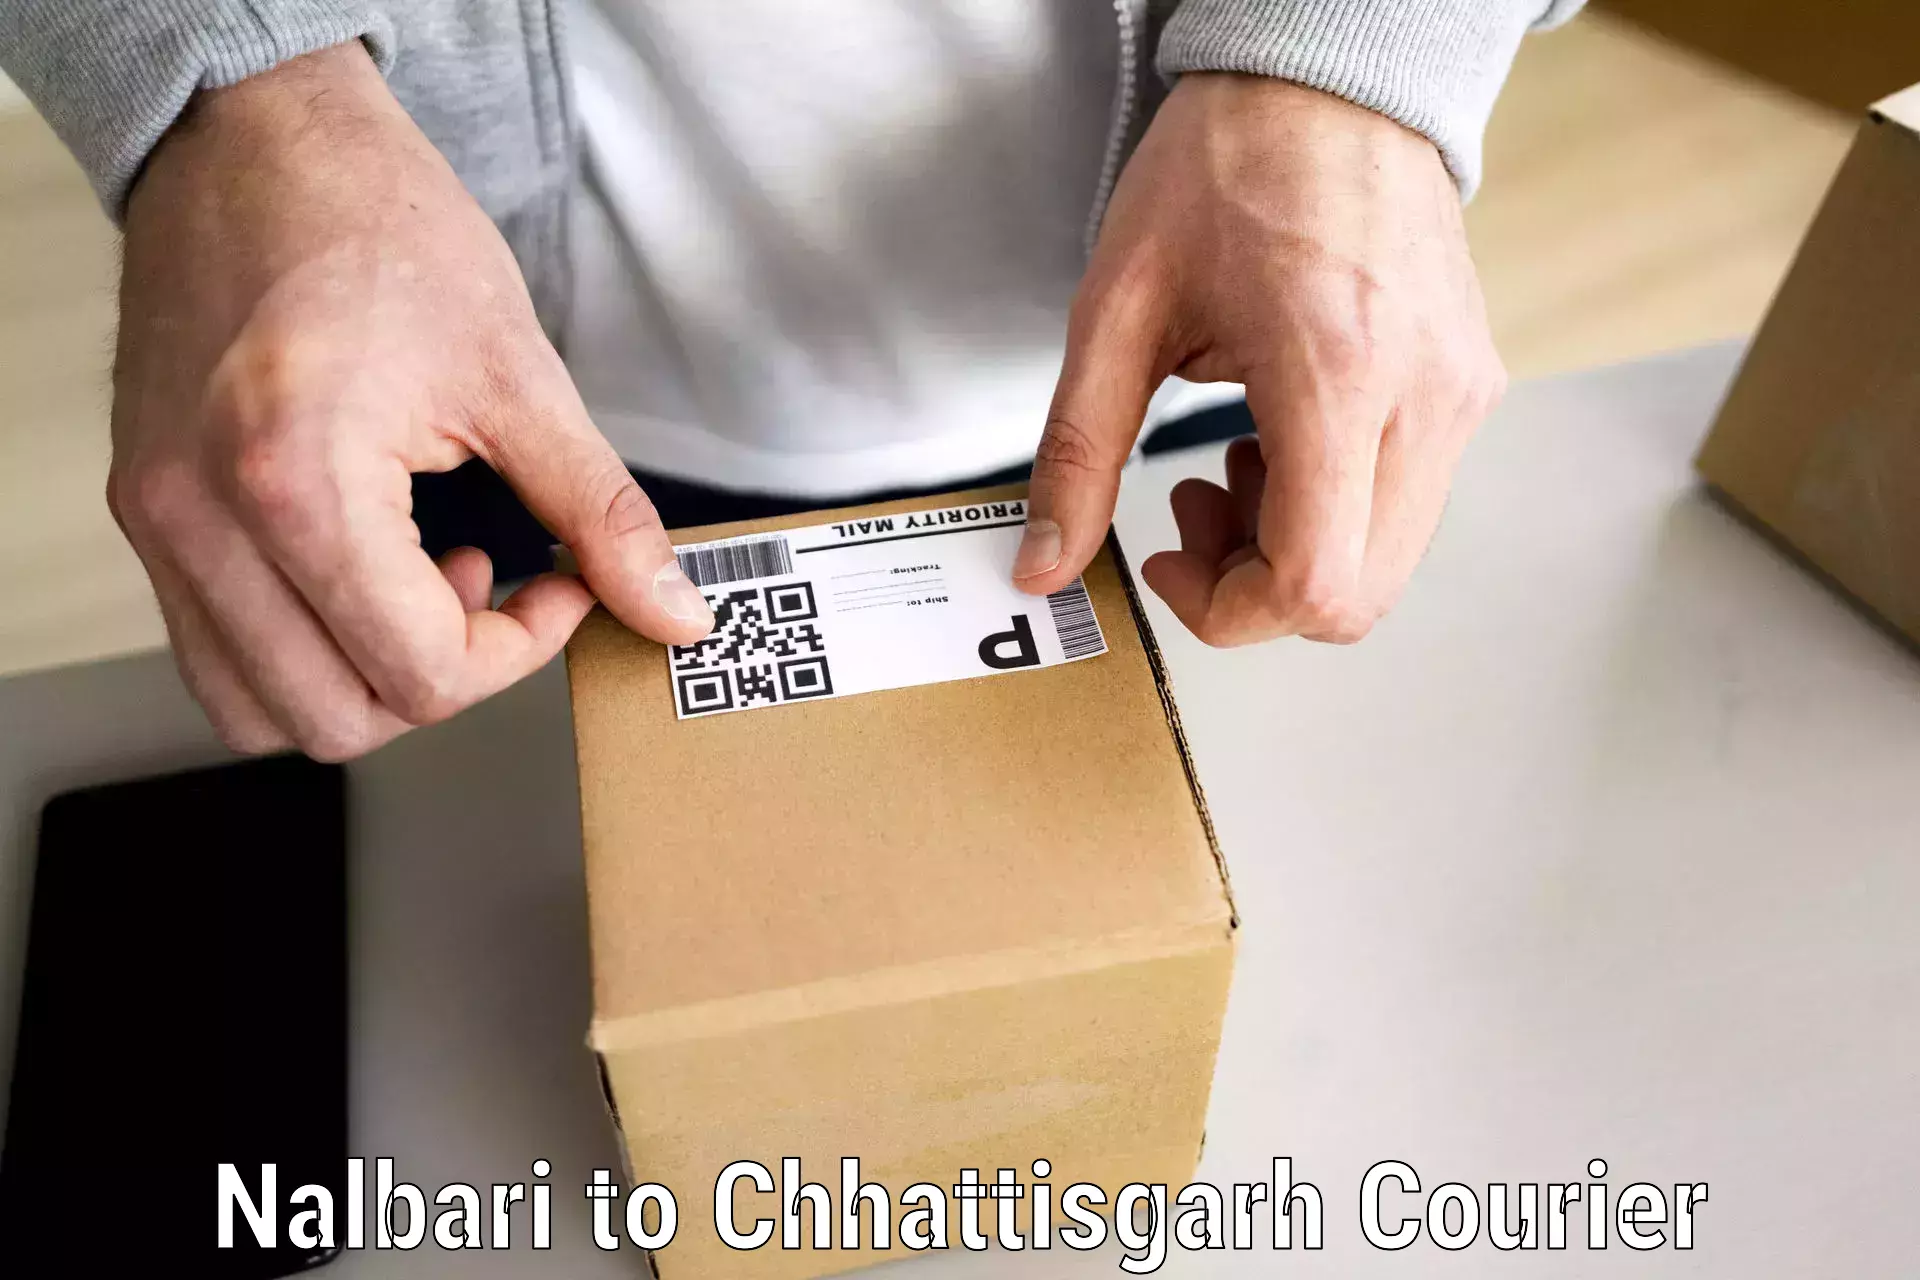 Moving and packing experts Nalbari to Korea Chhattisgarh